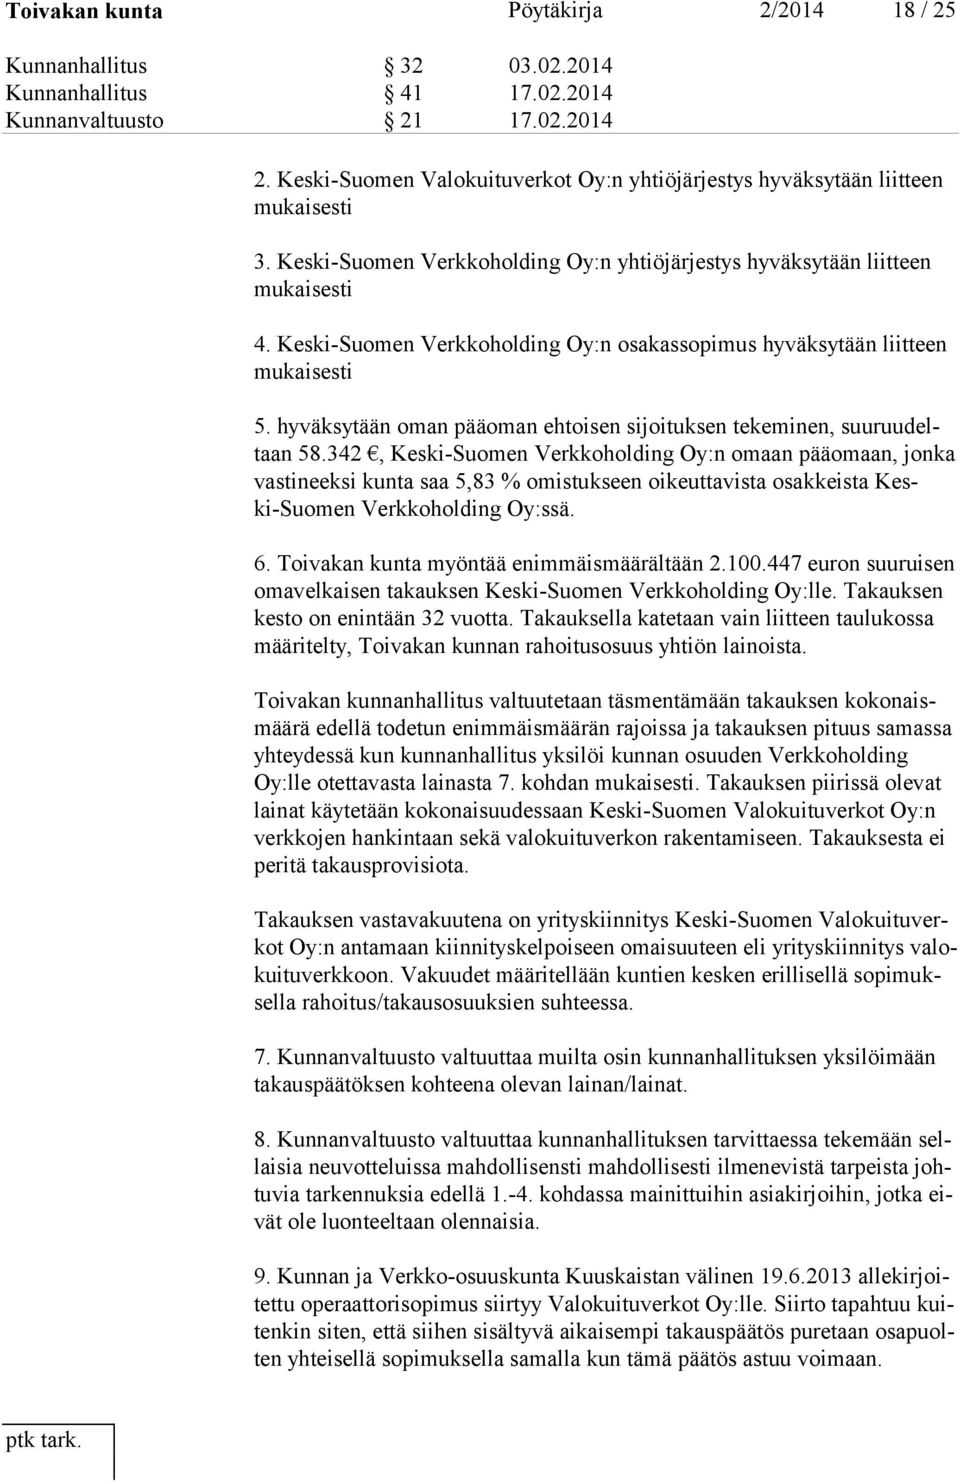 Keski-Suomen Verkkoholding Oy:n osakassopimus hyväksytään liitteen mukaisesti 5. hyväksytään oman pääoman ehtoisen sijoituksen tekeminen, suuruudeltaan 58.